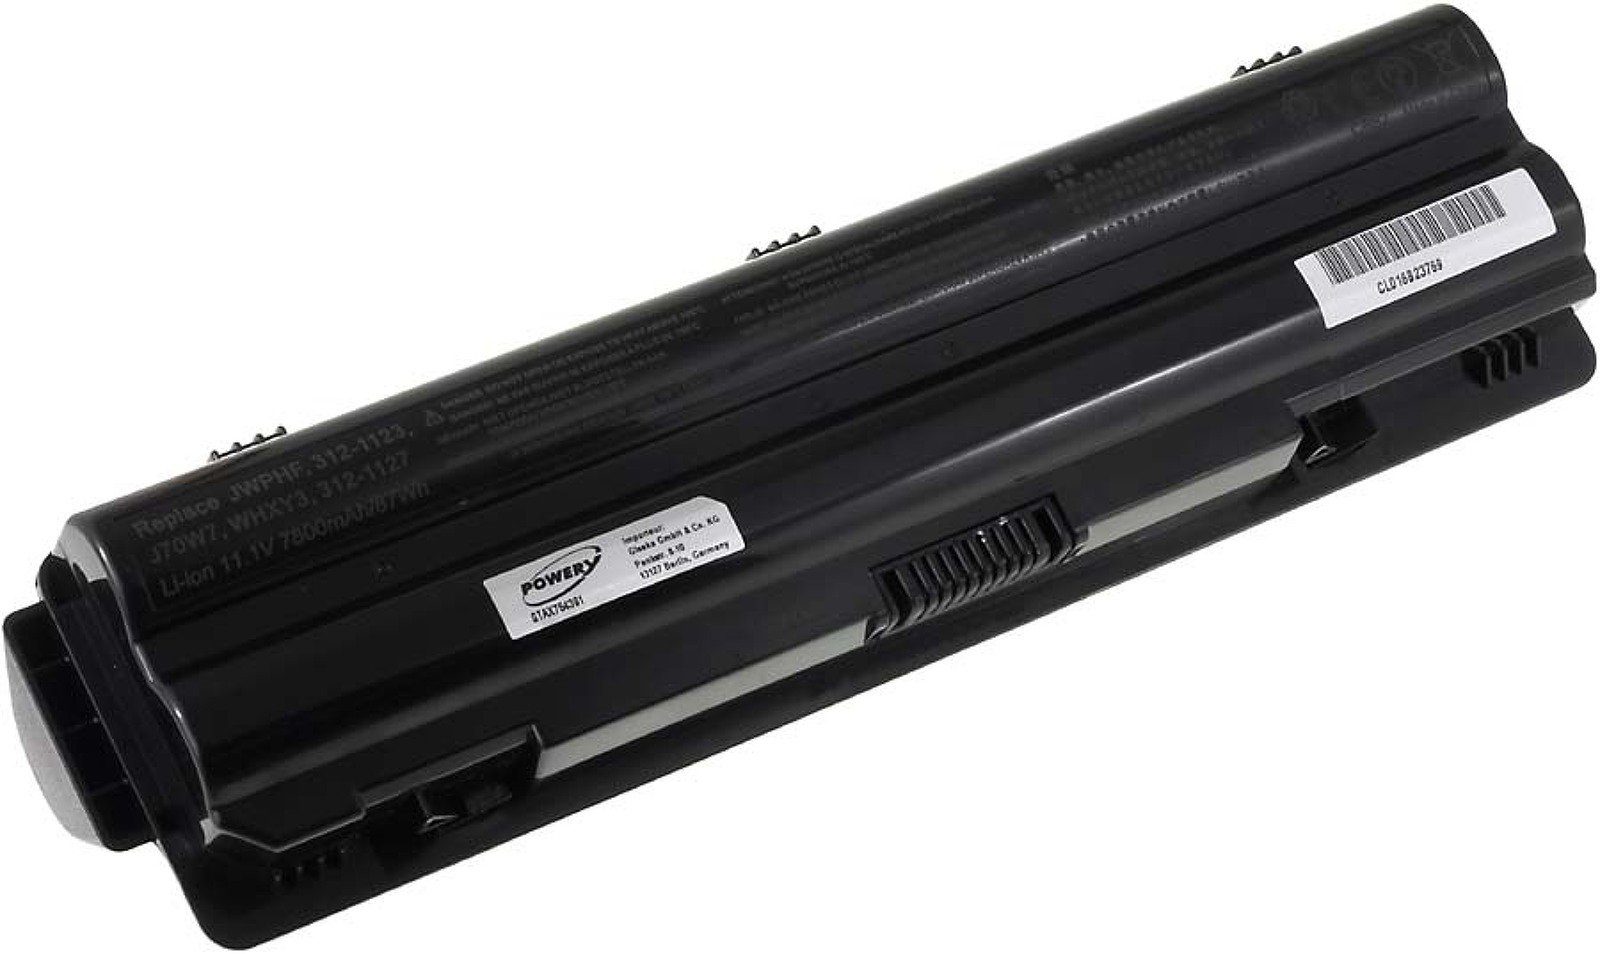 L701X XPS 7800 mAh Dell Akku Laptop-Akku für Powery (11.1 V)